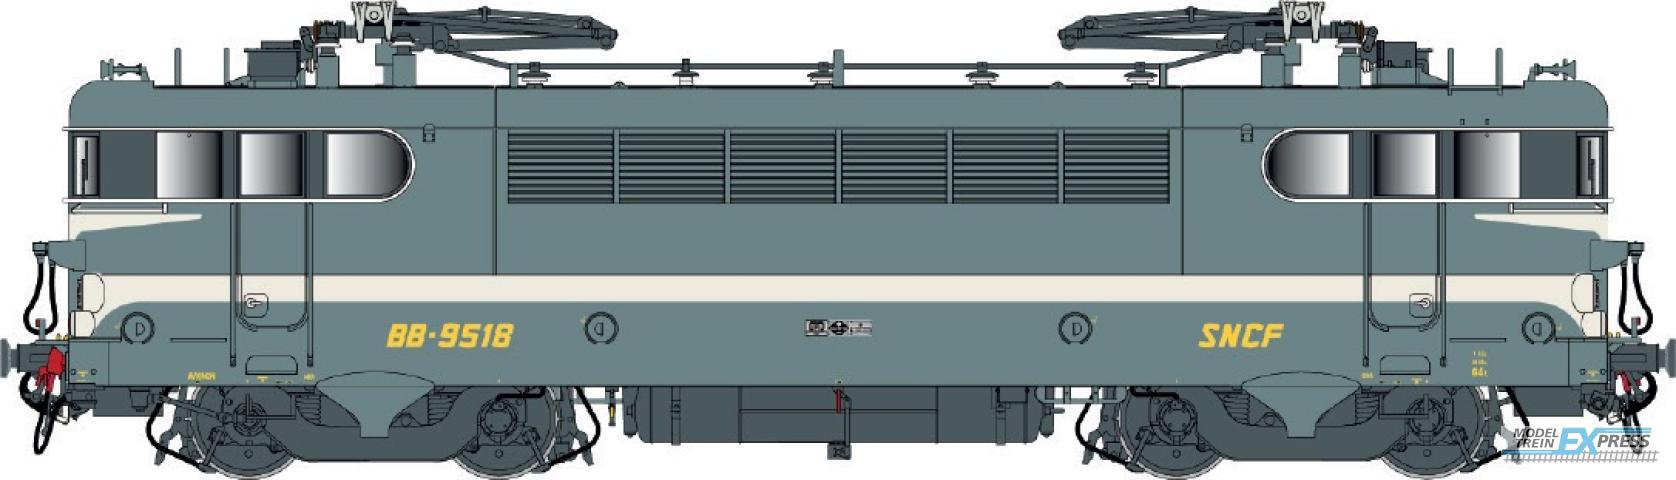 LS Models 10727S BB 9400, groen blauw, brede witte lijn, geschilderde snor, vet logo  /  Ep. IV  /  SNCF  /  HO  /  AC SOUND  /  1 P.